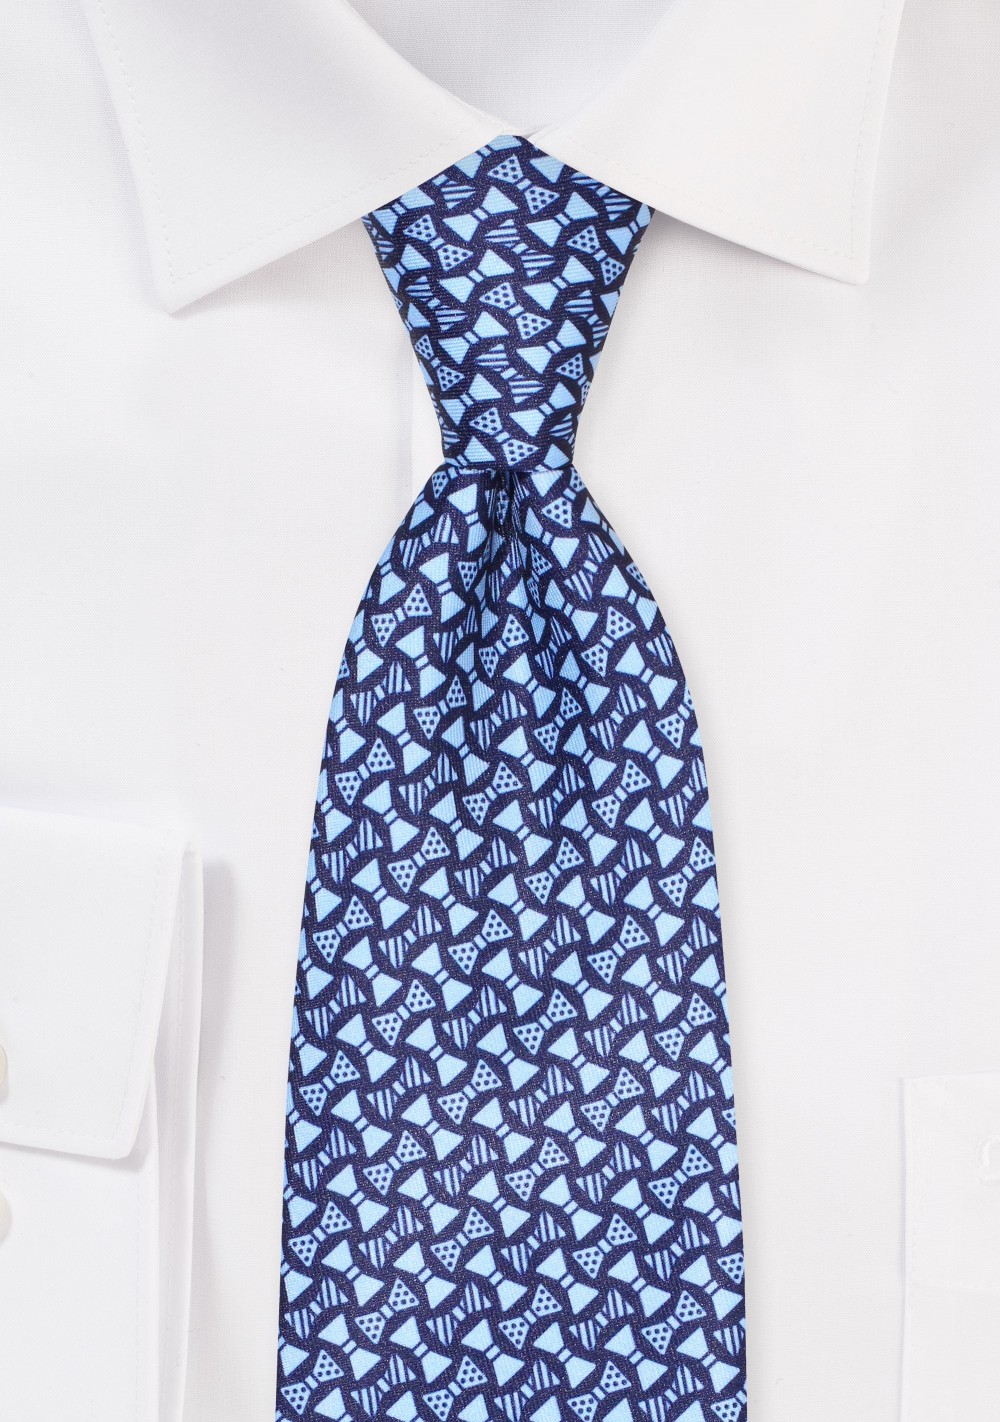 Blue Necktie with Bowtie Print